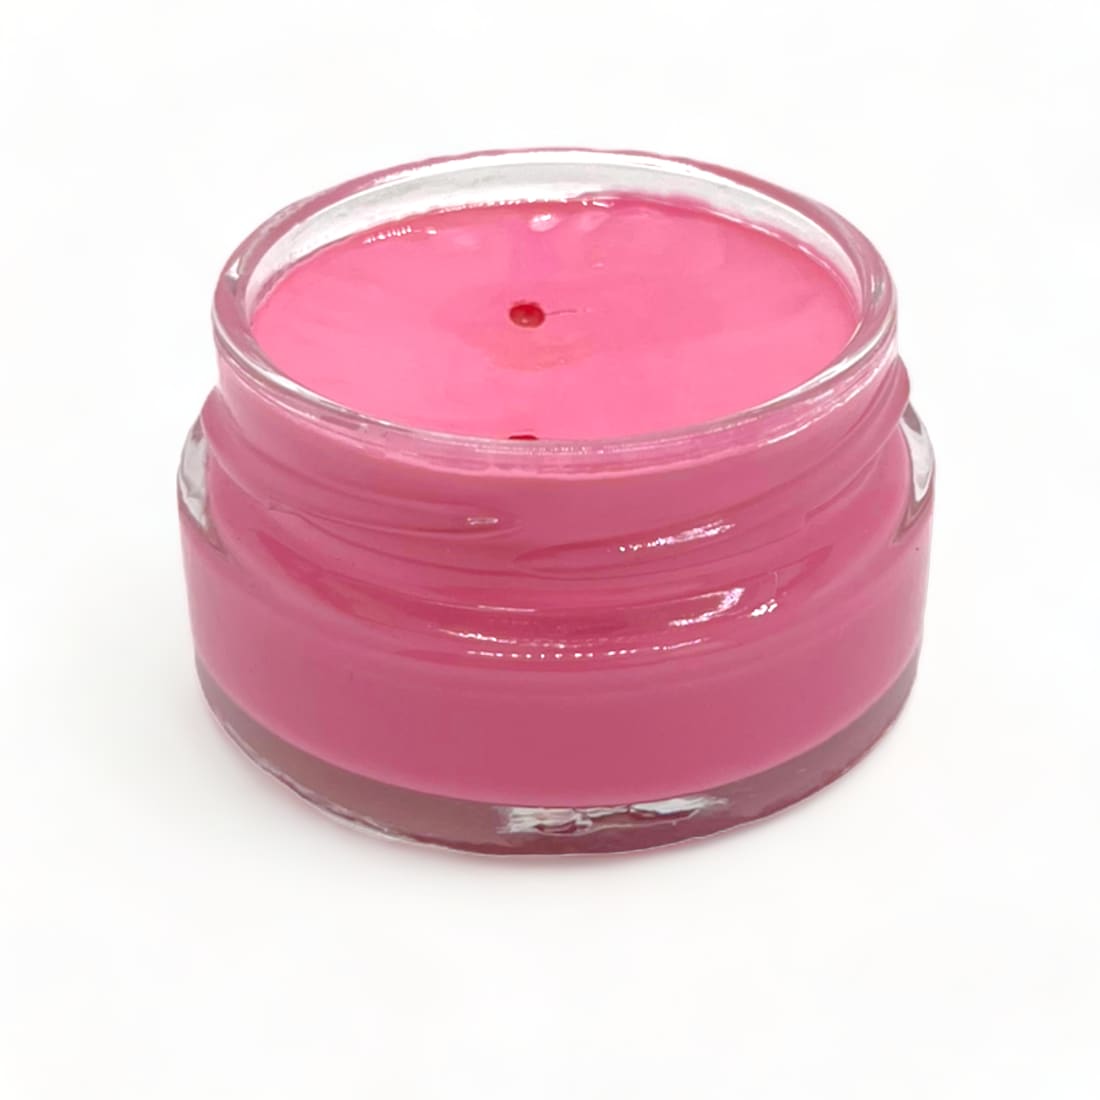 Cirage Crème Surfine Rose Pompadour - Saphir - 50 ml -